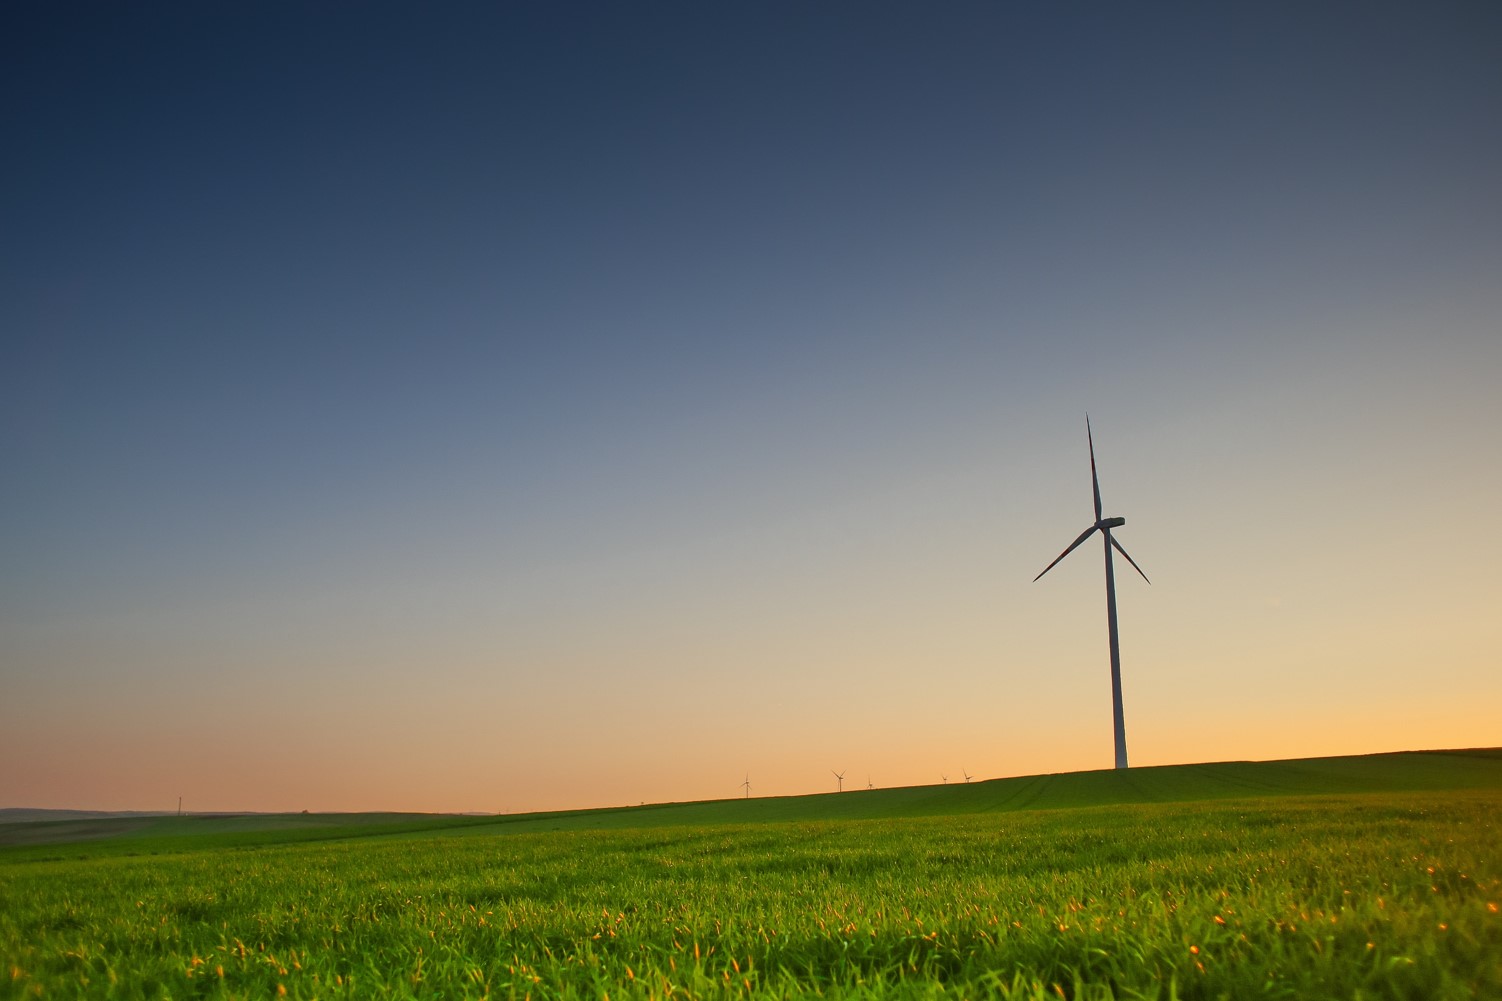 widok na zieloną łąkę o zachodzie słońca, na dalszym planie widać monumentalną turbinę wiatrową w białym kolorze, w oddali zaś kolejne turbiny, które są ledwo widoczne ze względu na odległość